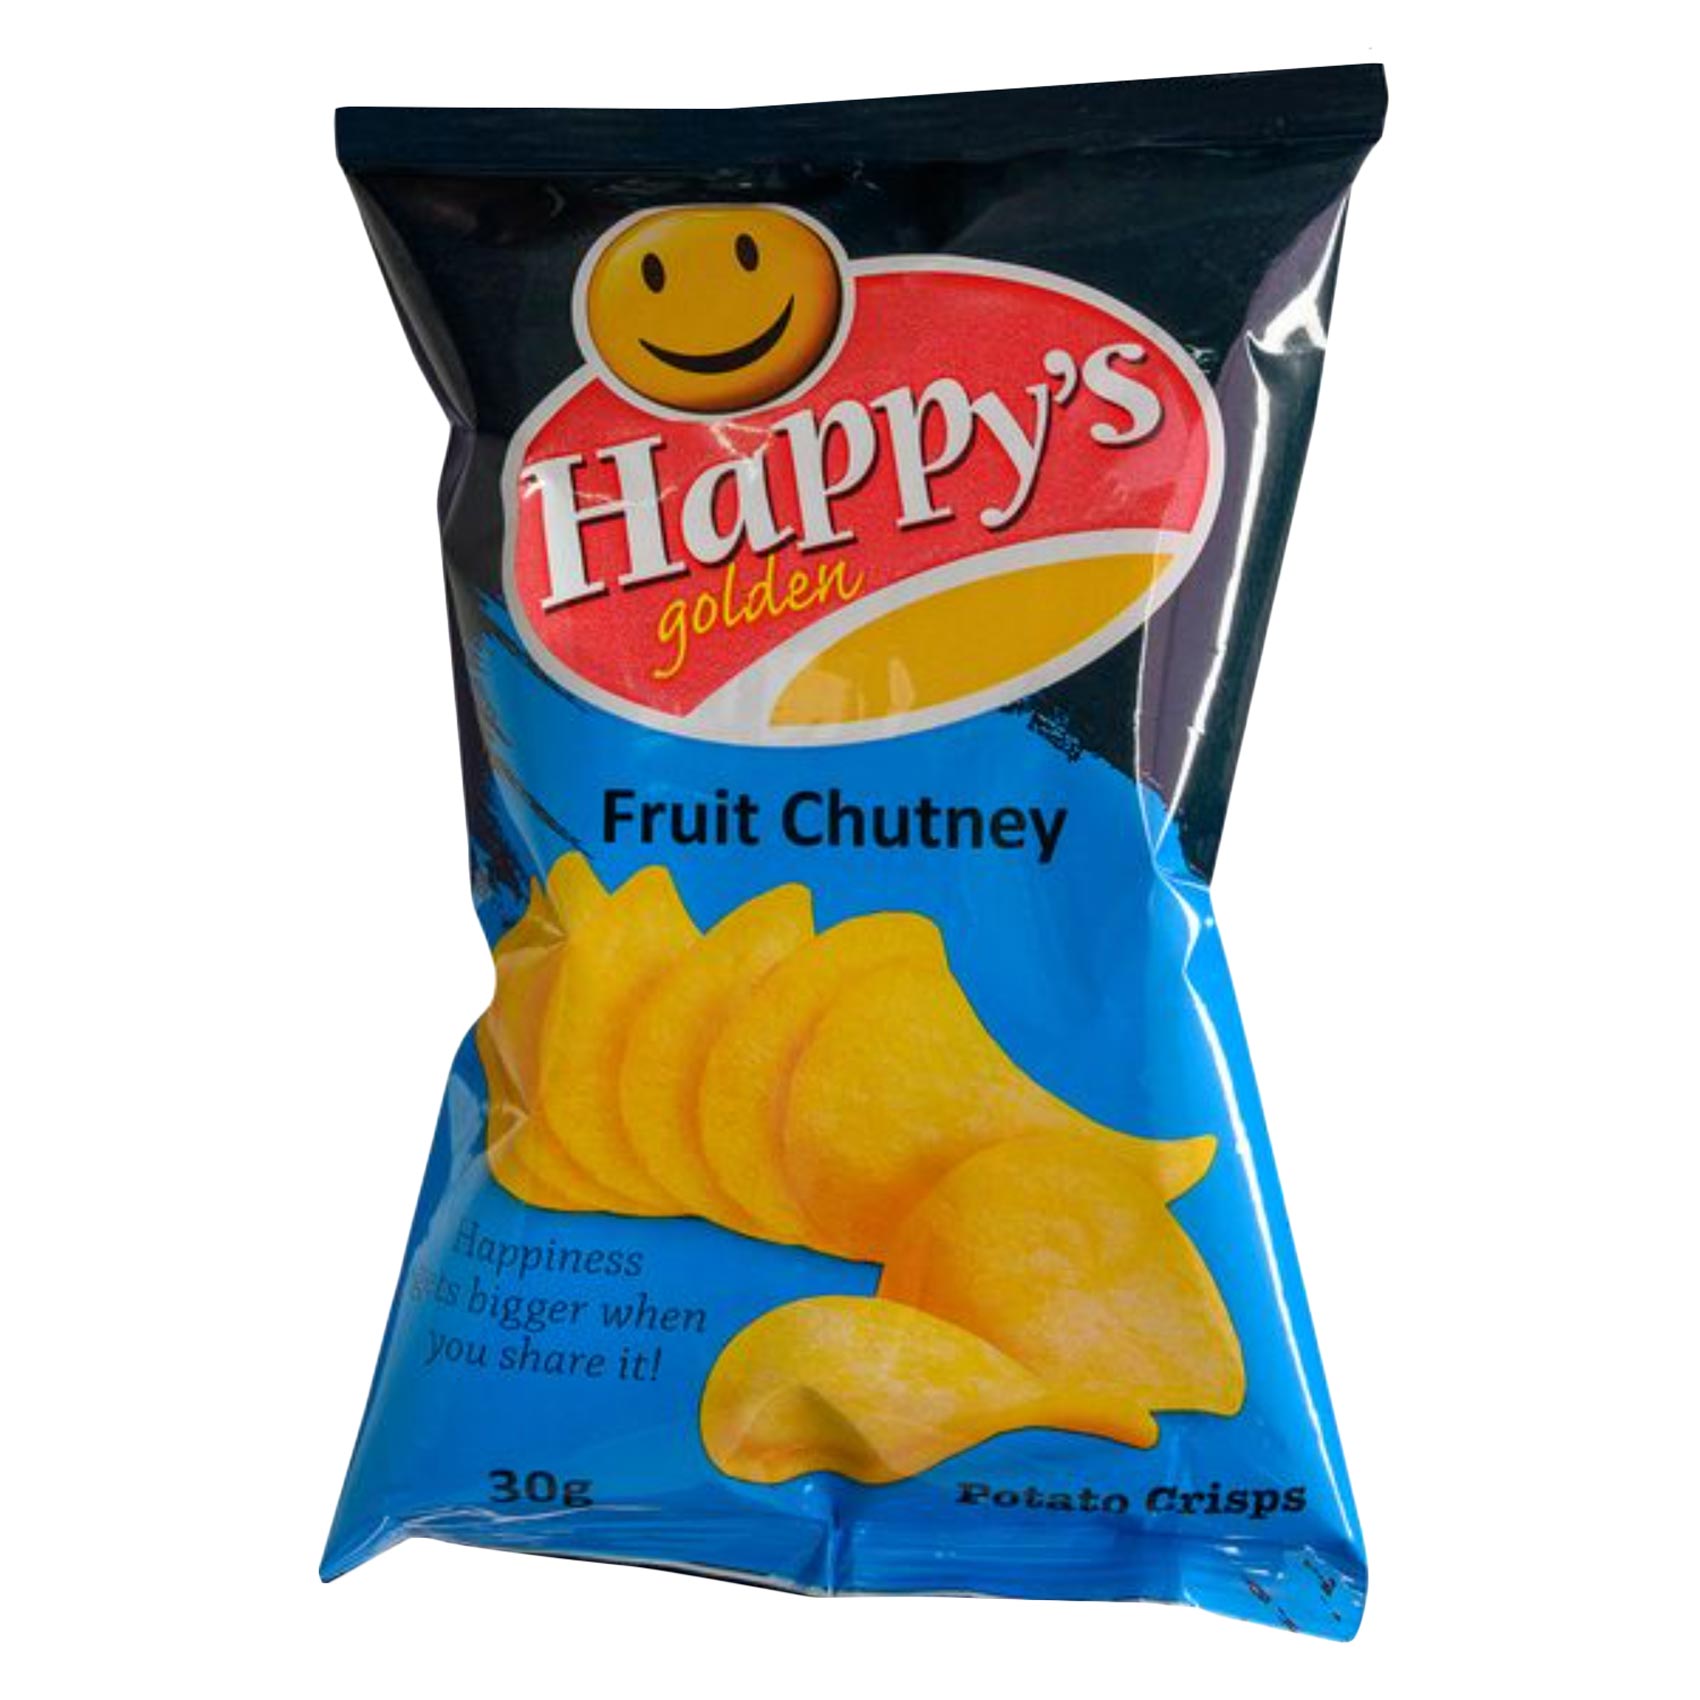 Happys Golden Fruit Chutney Crisps Chips 30G